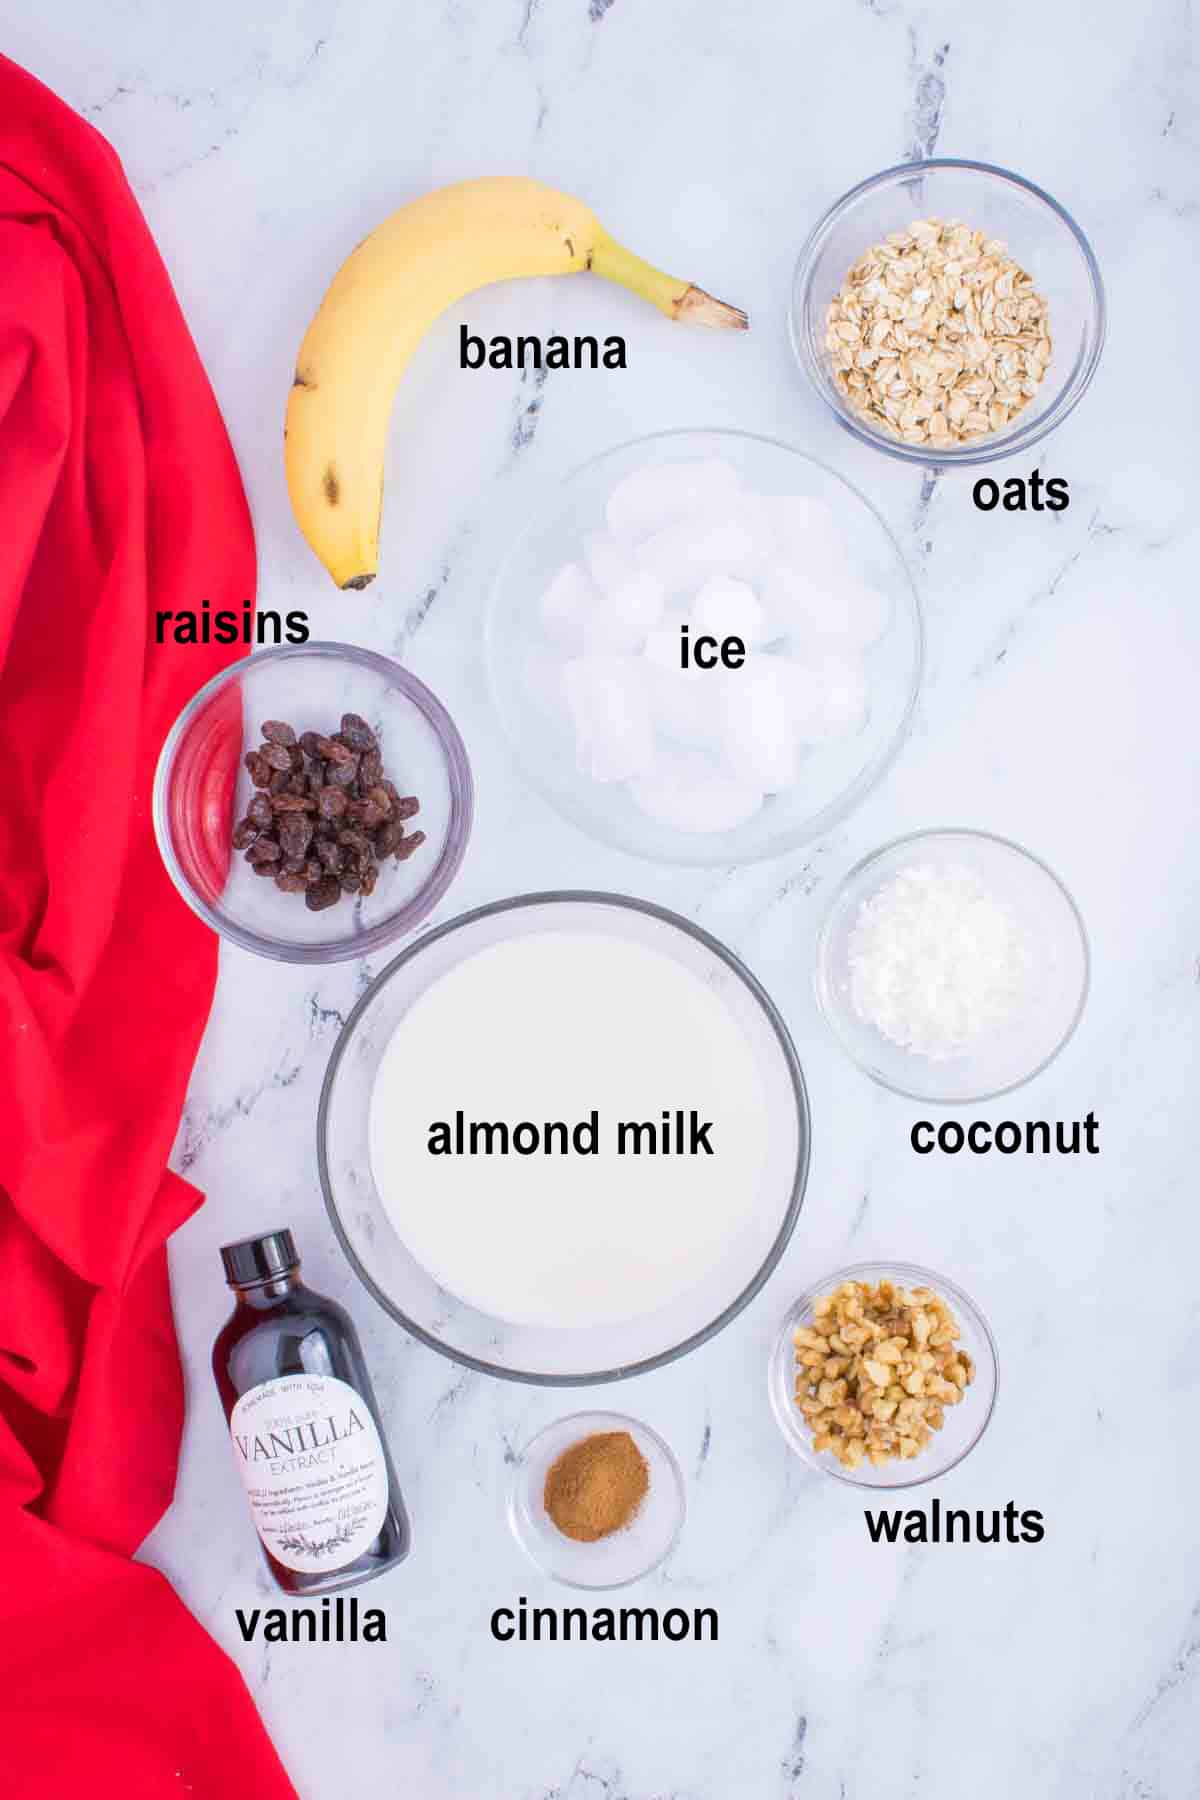 banana, oats, raisins, ice, almond milk, coconut, vanilla, cinnamon, walnuts.